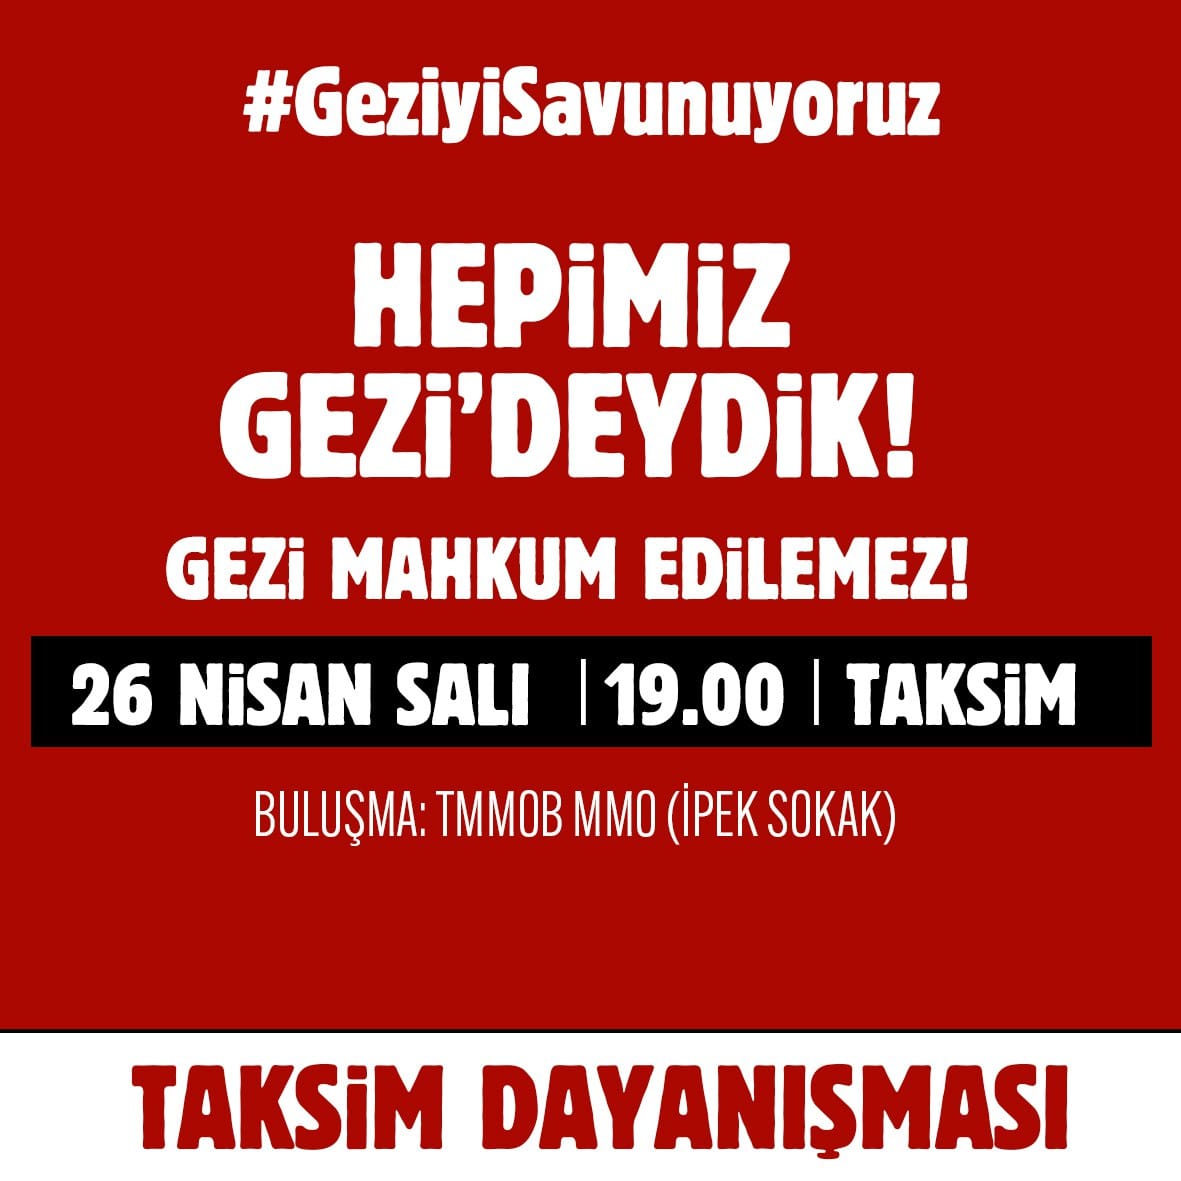 Gezi Davası'nda verilen hukuksuz karara karşı gerçekleştireceğimiz basın açıklaması için yarın (Salı) 19.00'da Taksim'de TMMOB Makina Mühendisleri Odası önünde buluşuyoruz. #GeziyiSavunuyoruz